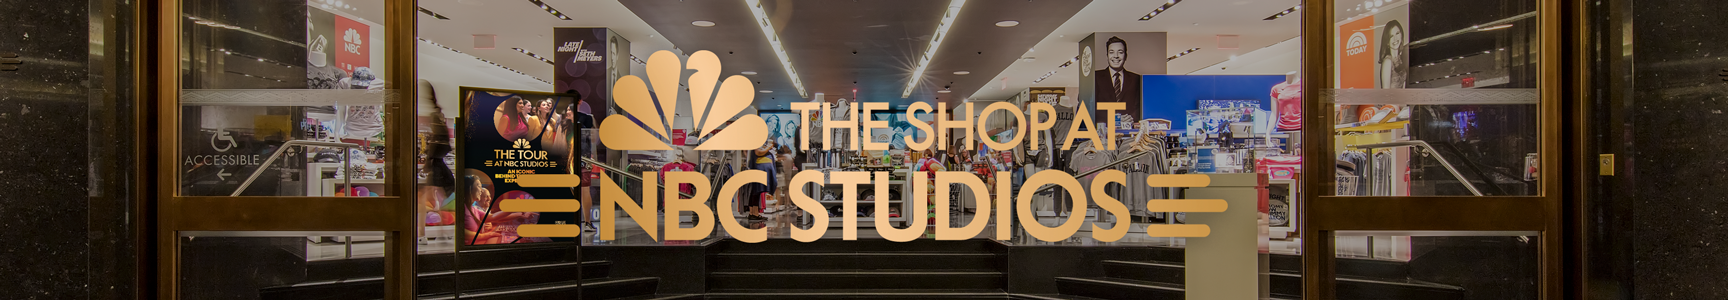 Shop All - The Shop at NBC Studios